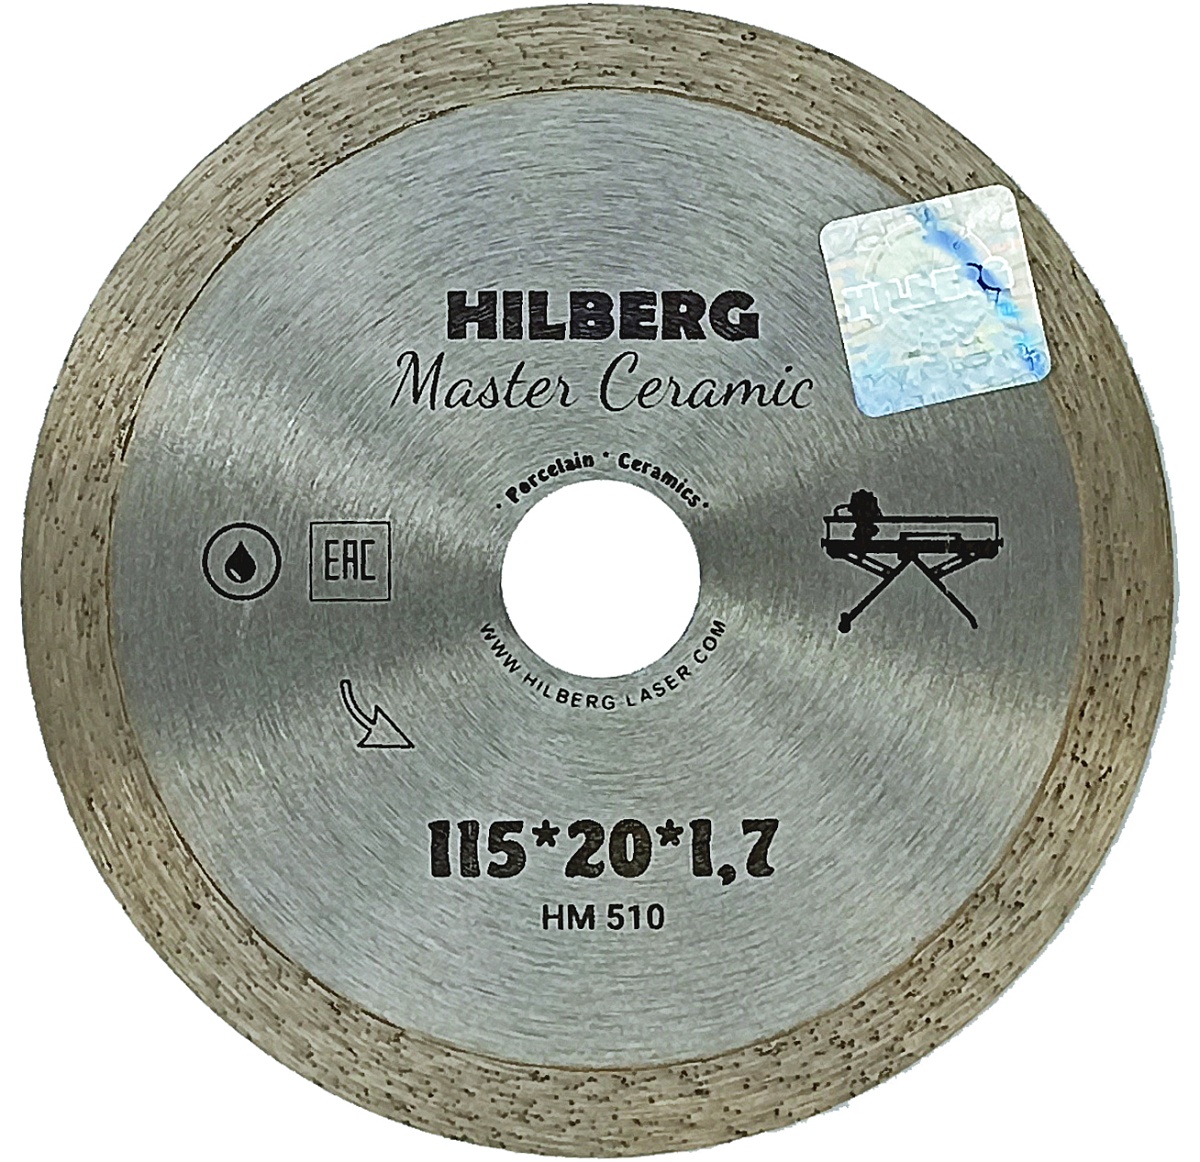 Hilberg сплошной серия Master Ceramic для Плиткорезов